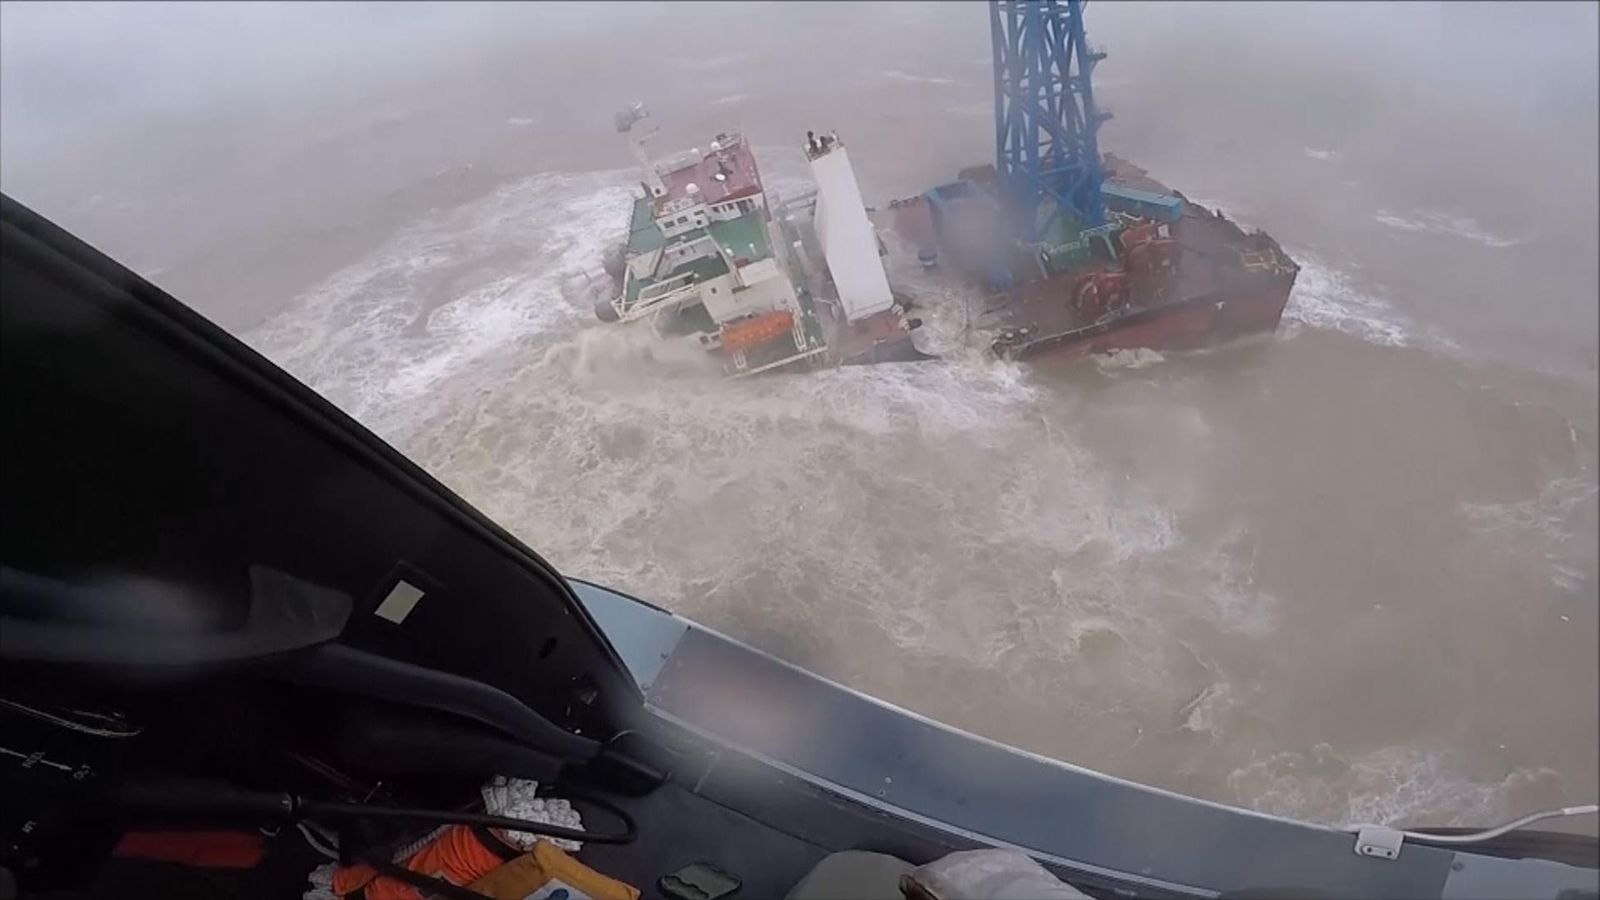 تخلى الطاقم عن السفينة نصف المغمورة بعد أن ضرب إعصار رهيب بحر الصين الجنوبي  اخبار العالم